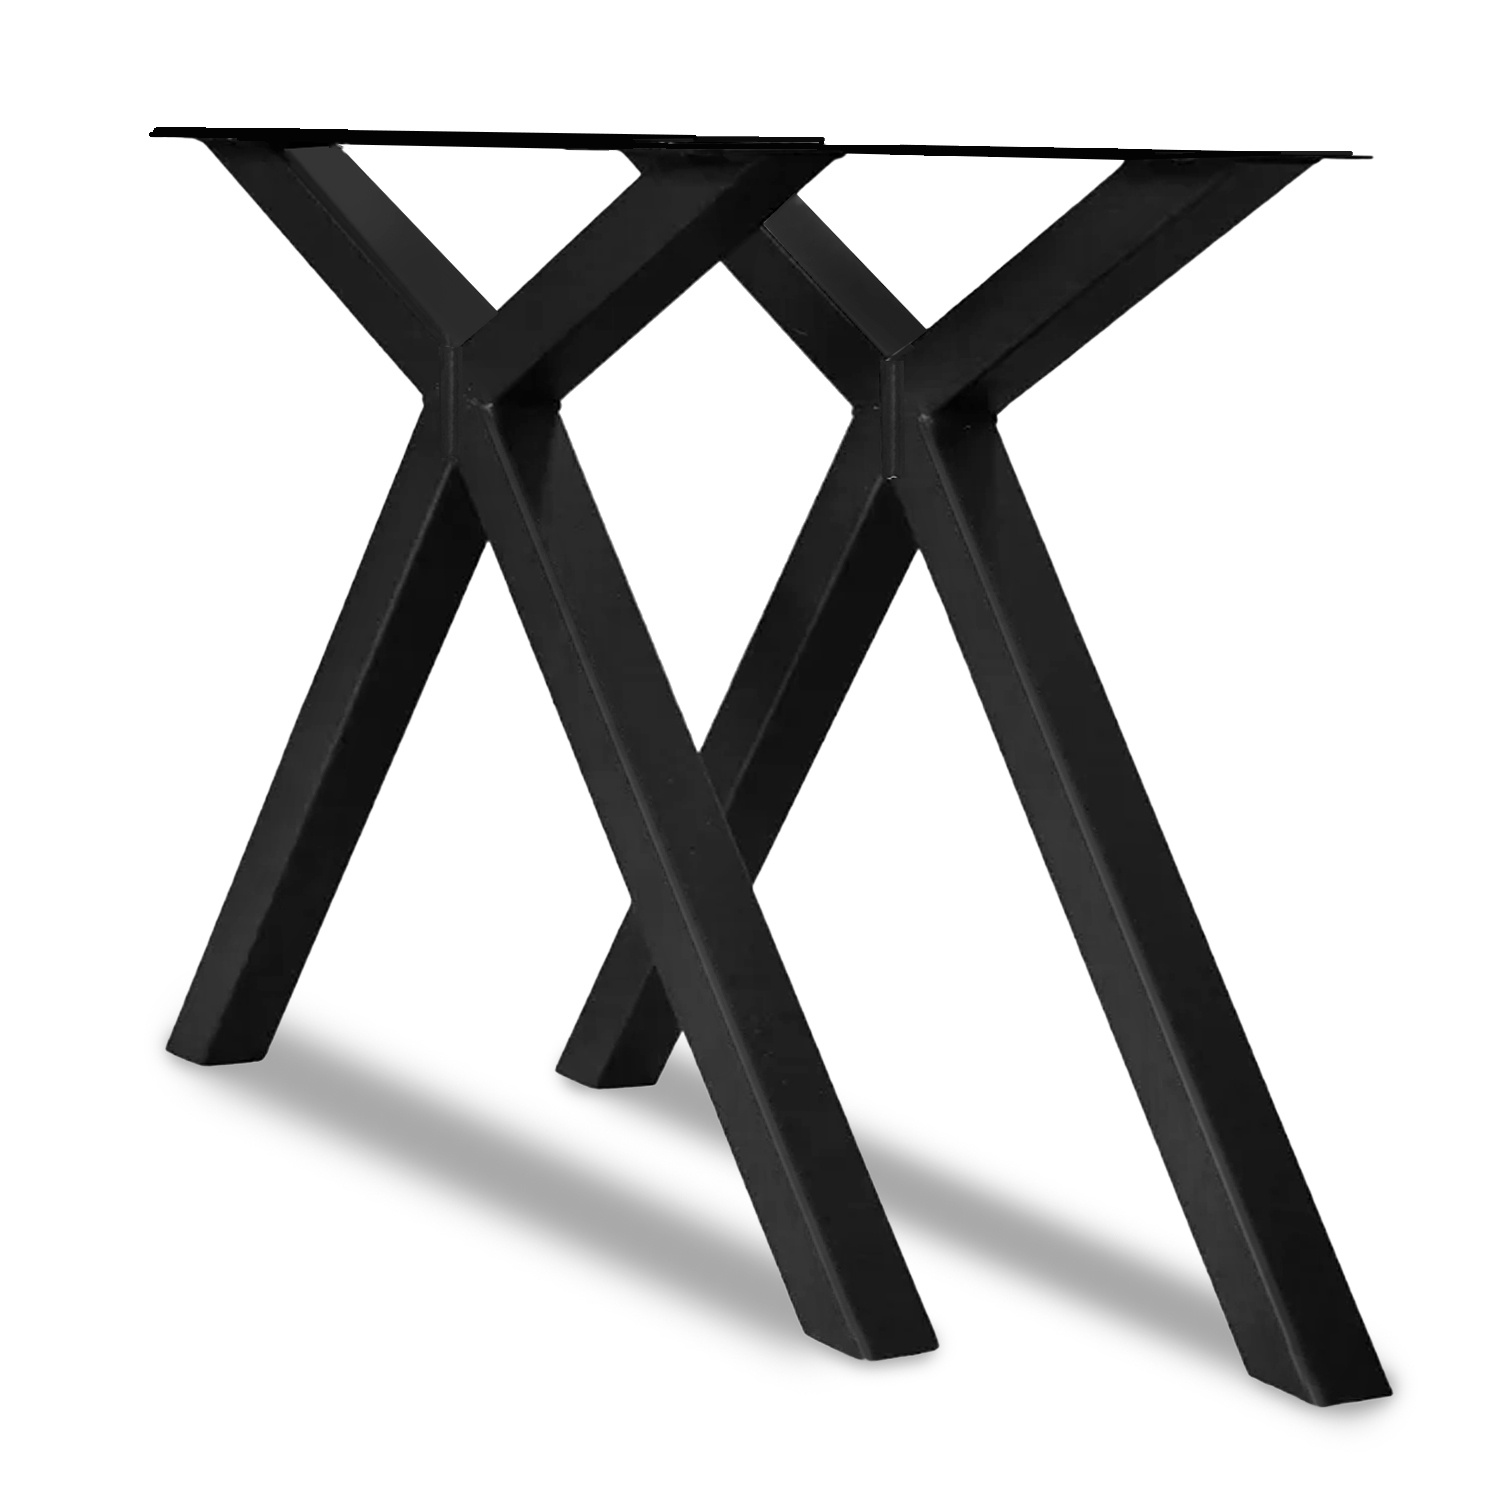  Stalen X-speciaal tafelpoten (SET) 5x5 cm - 78 cm breed - 72 cm hoog - X-poot - Gepoedercoat ZWART